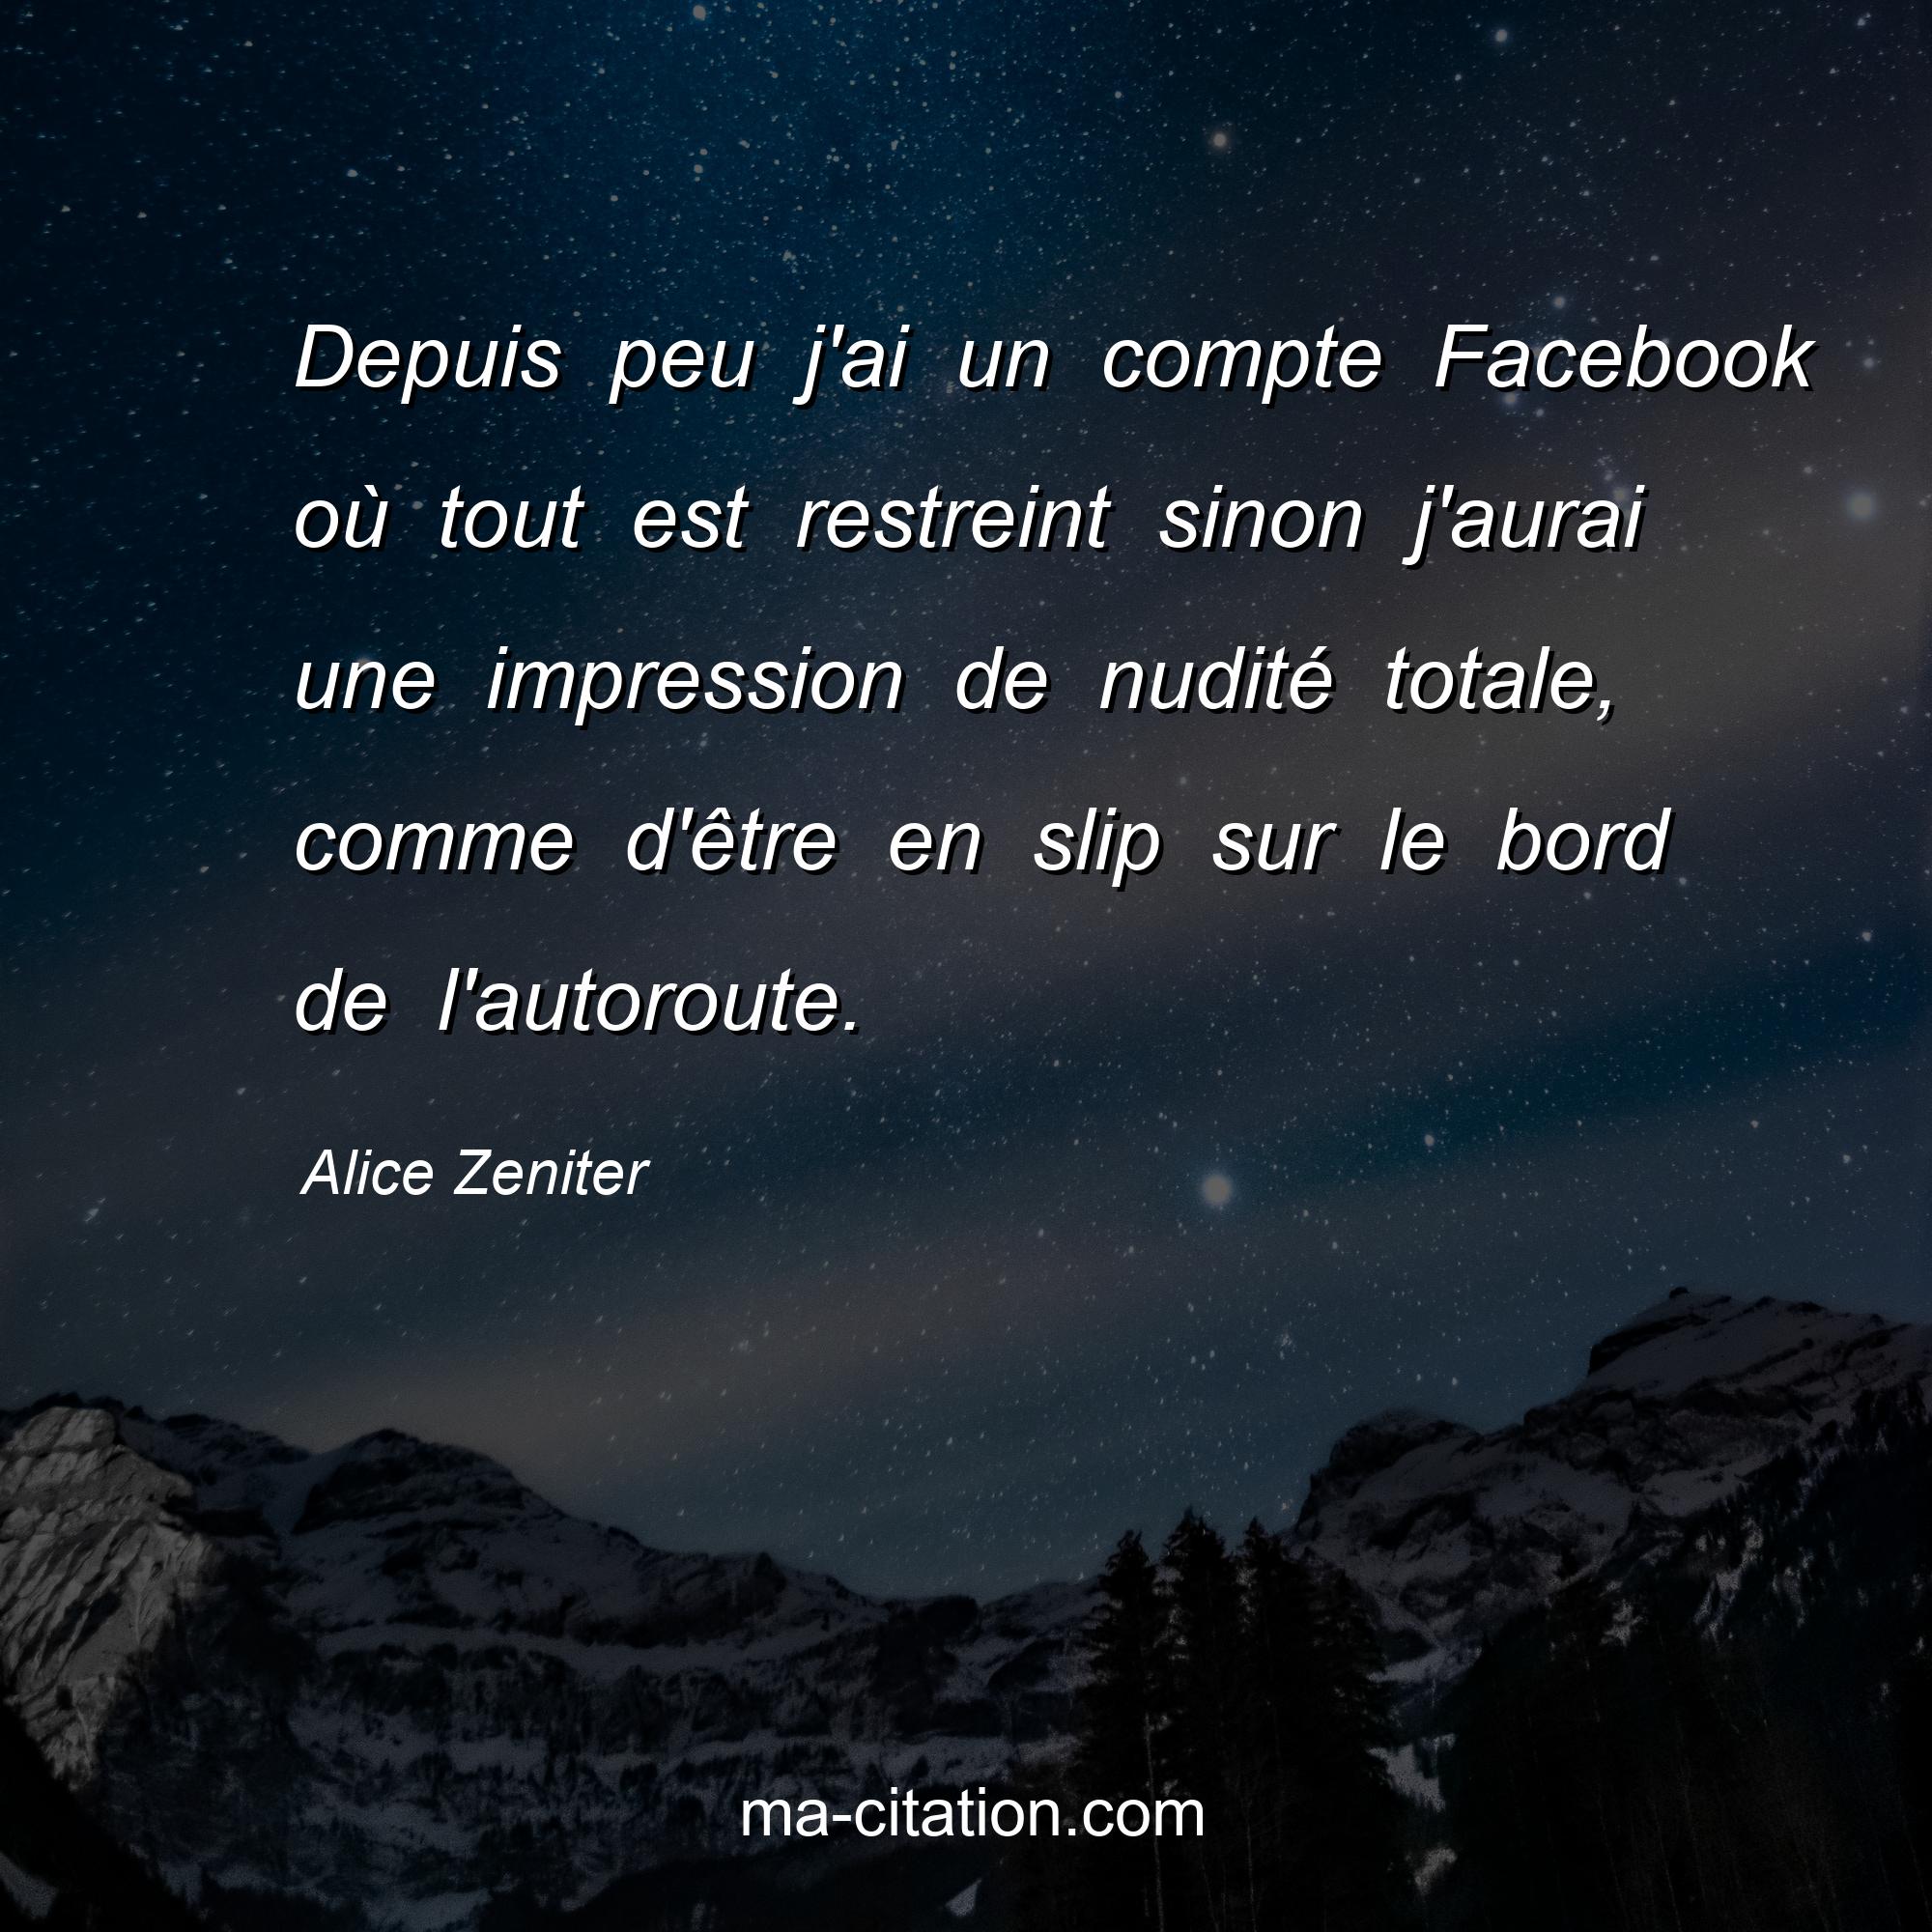 Alice Zeniter : Depuis peu j'ai un compte Facebook où tout est restreint sinon j'aurai une impression de nudité totale, comme d'être en slip sur le bord de l'autoroute.